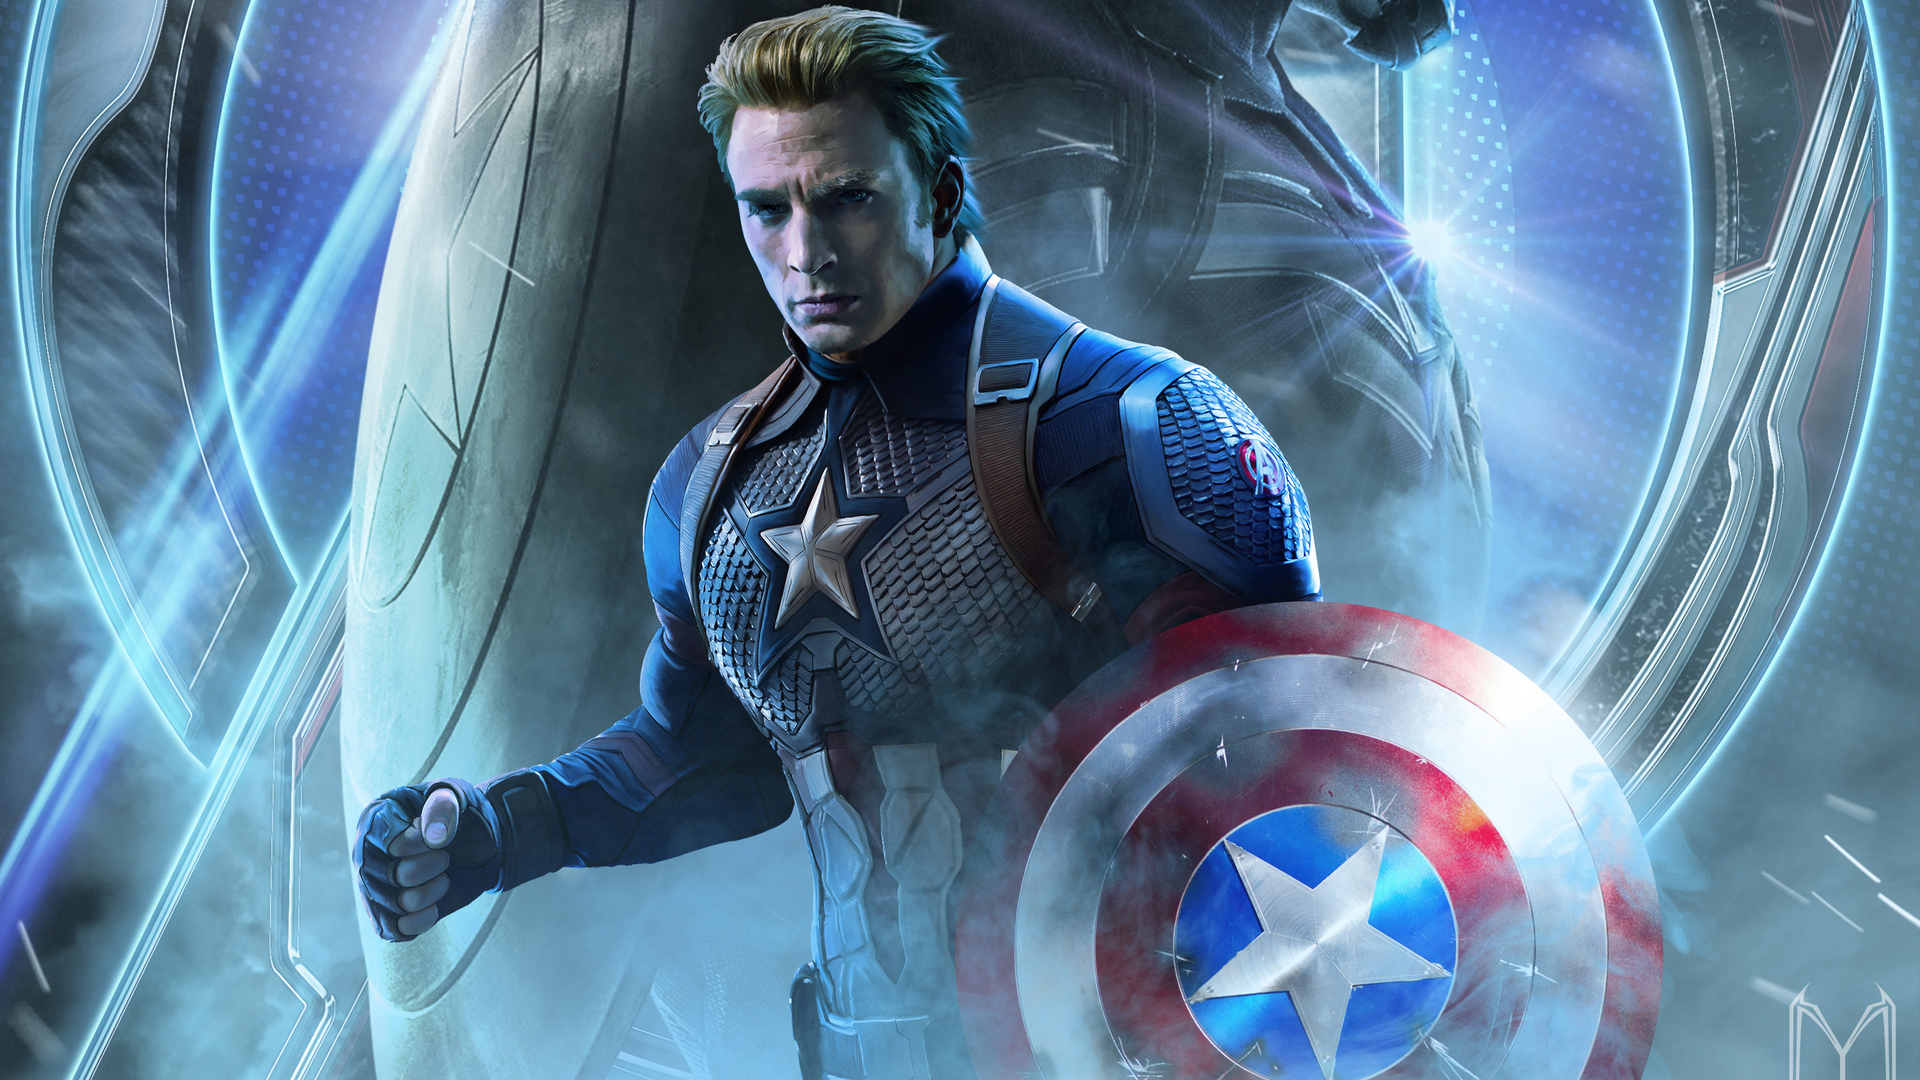 Captain America In Avengers Endgame 2019 Laptop